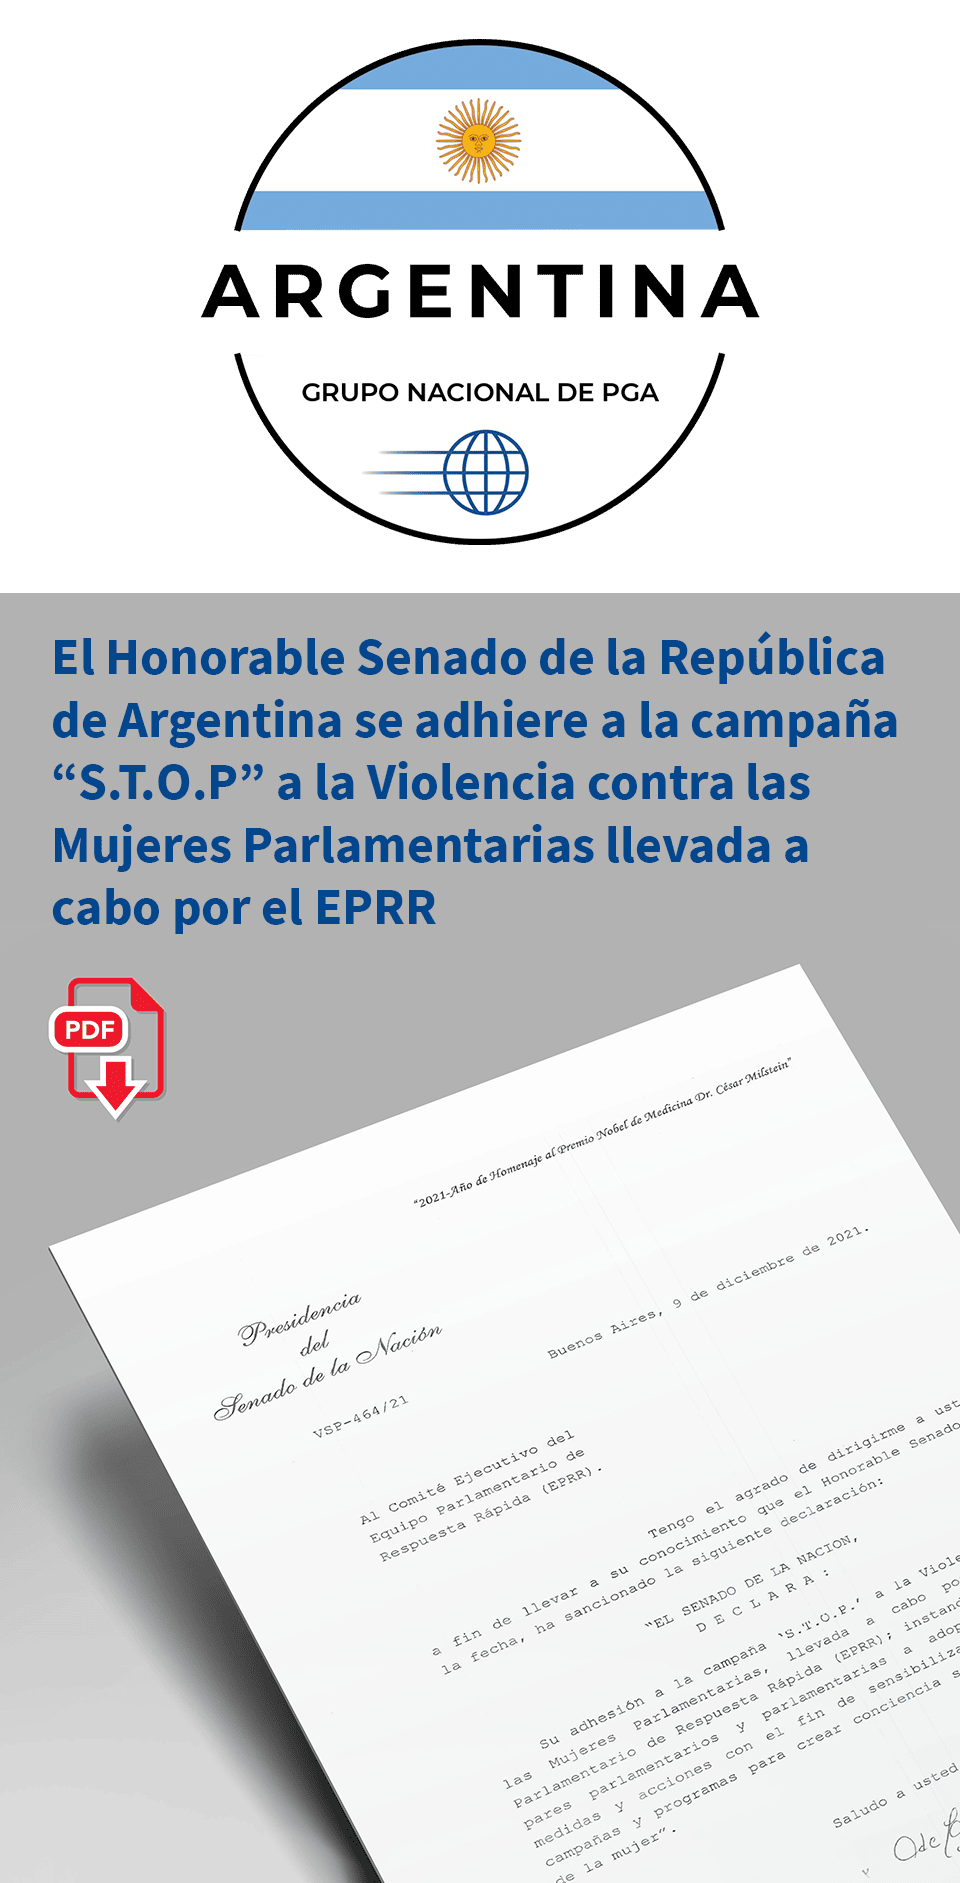 El Honorable Senado de la República de Argentina se adhiere a la campaña “S.T.O.P” a la Violencia contra las Mujeres Parlamentarias llevada a cabo por el EPRR